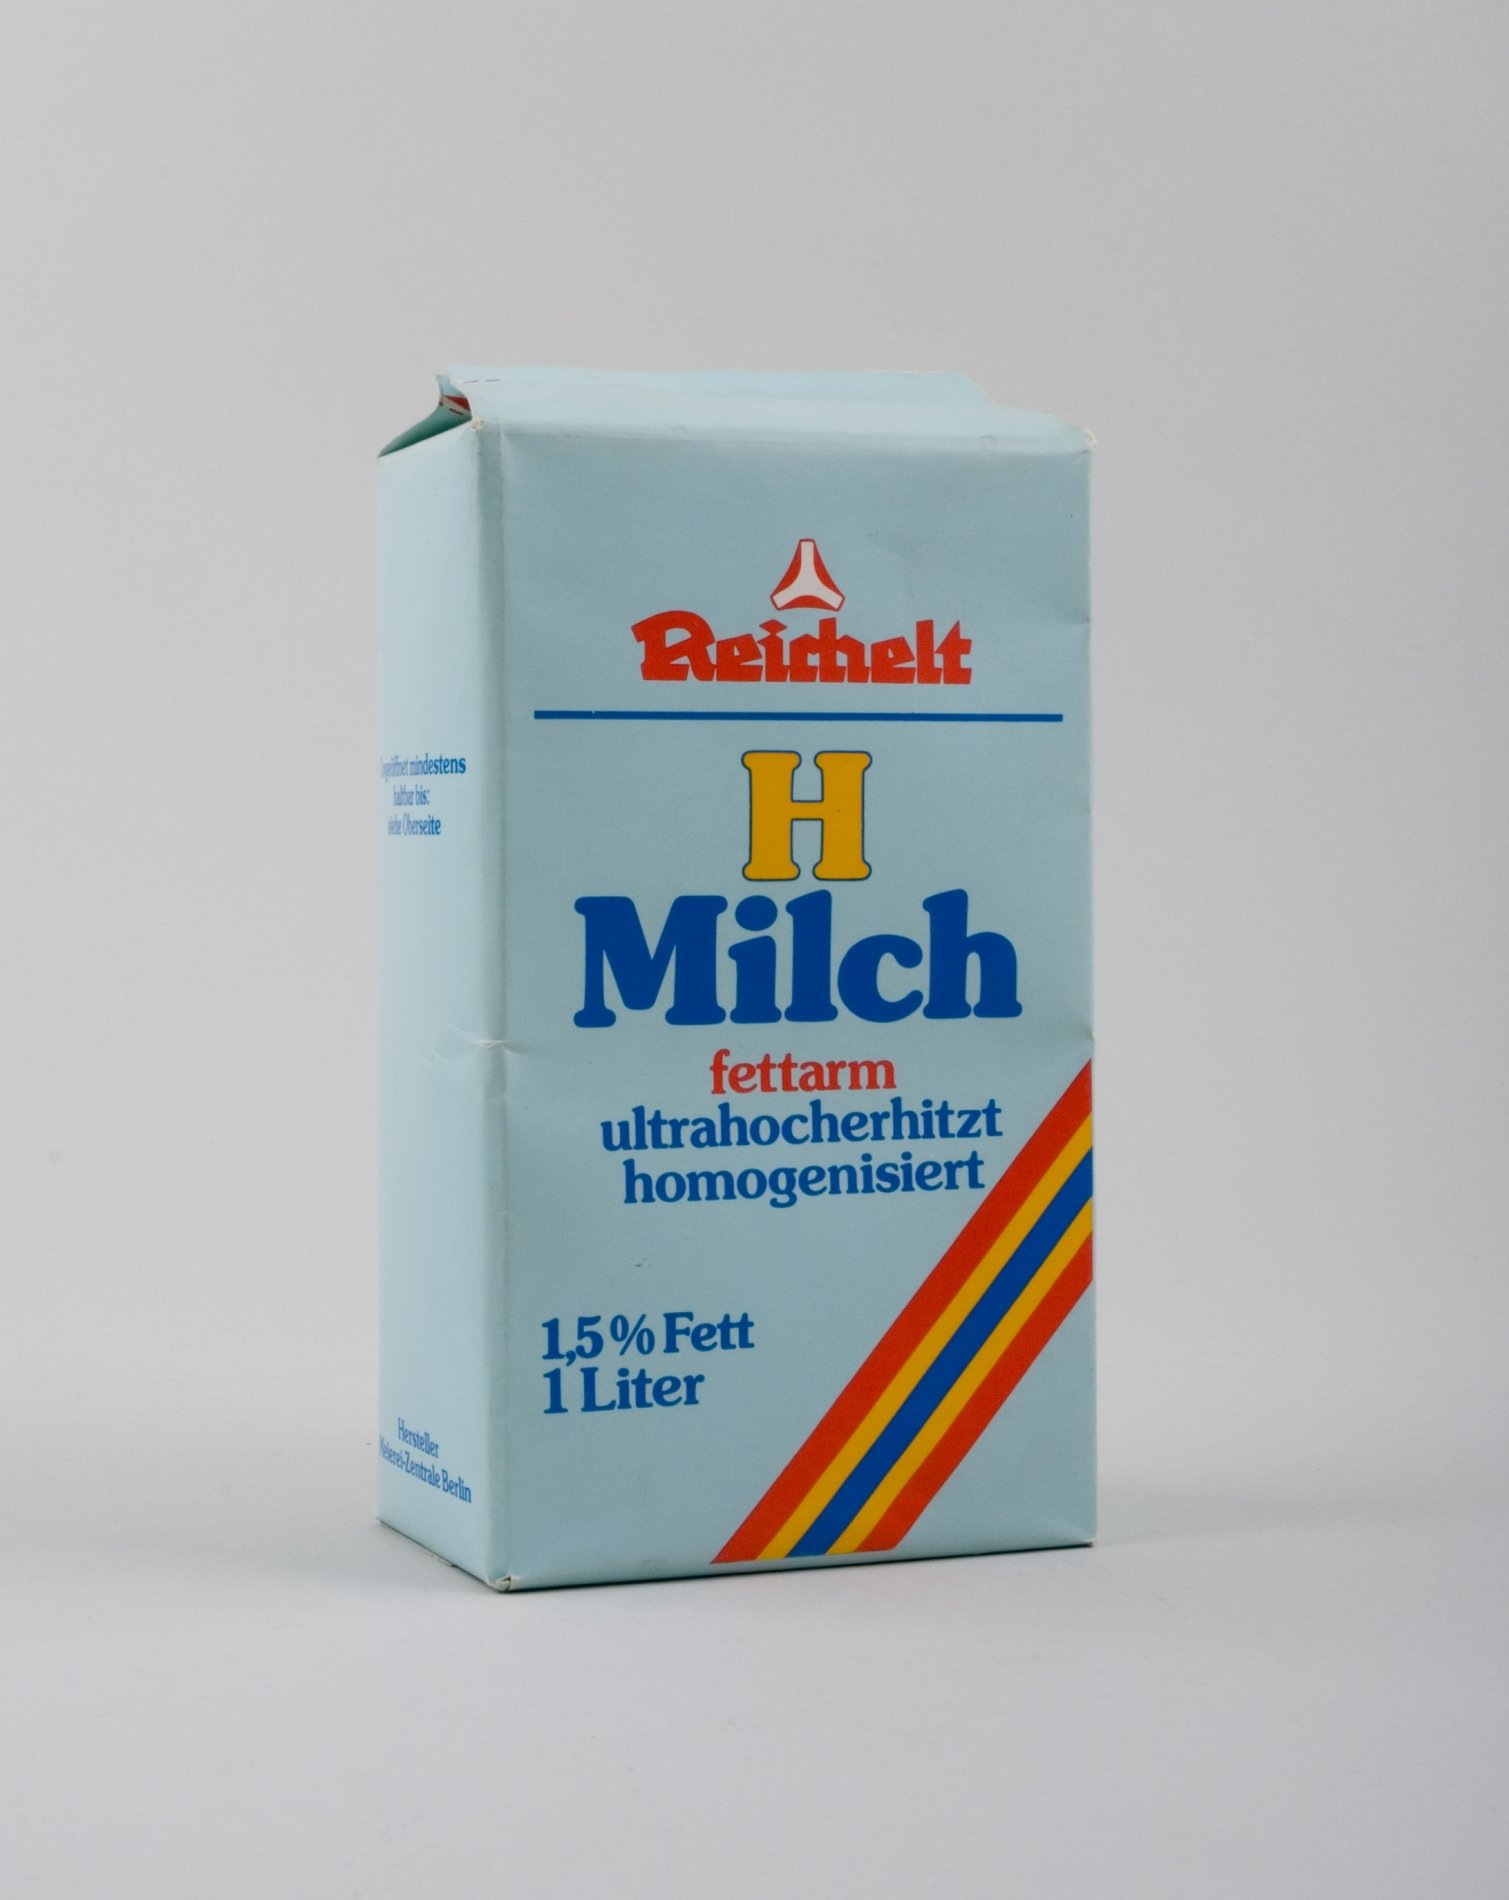 Verpackungs-Muster für "H-Milch" der Firma "Reichelt" (Stiftung Domäne Dahlem - Landgut und Museum, Weiternutzung nur mit Genehmigung des Museums CC BY-NC-SA)